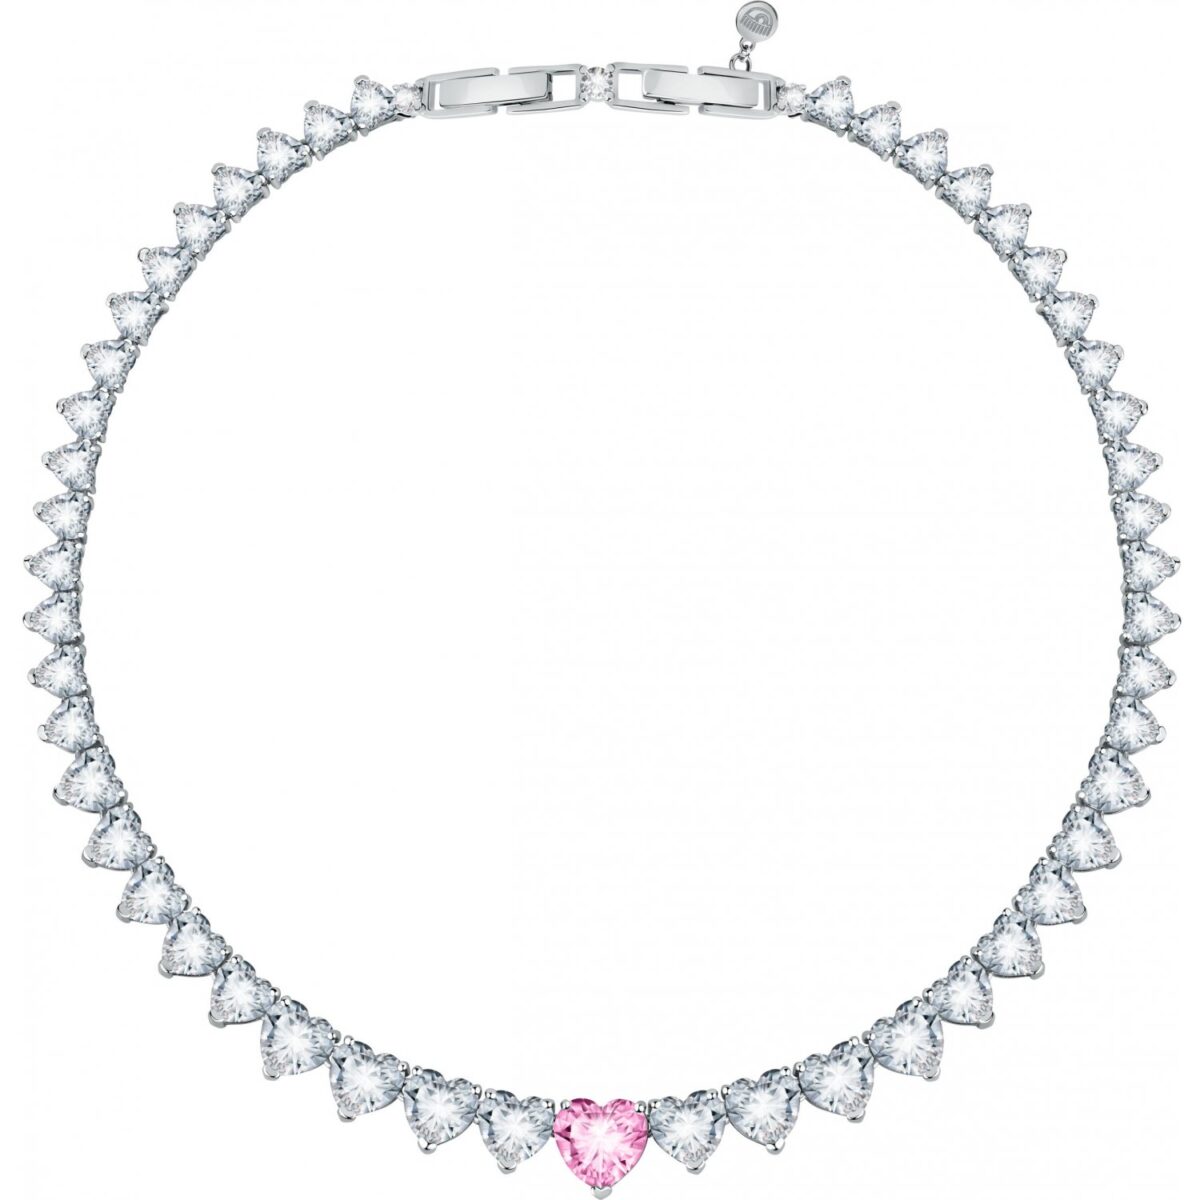 Collana Donna Chiara Ferragni Brand Diamond Heart Cuore Rosa Centrale